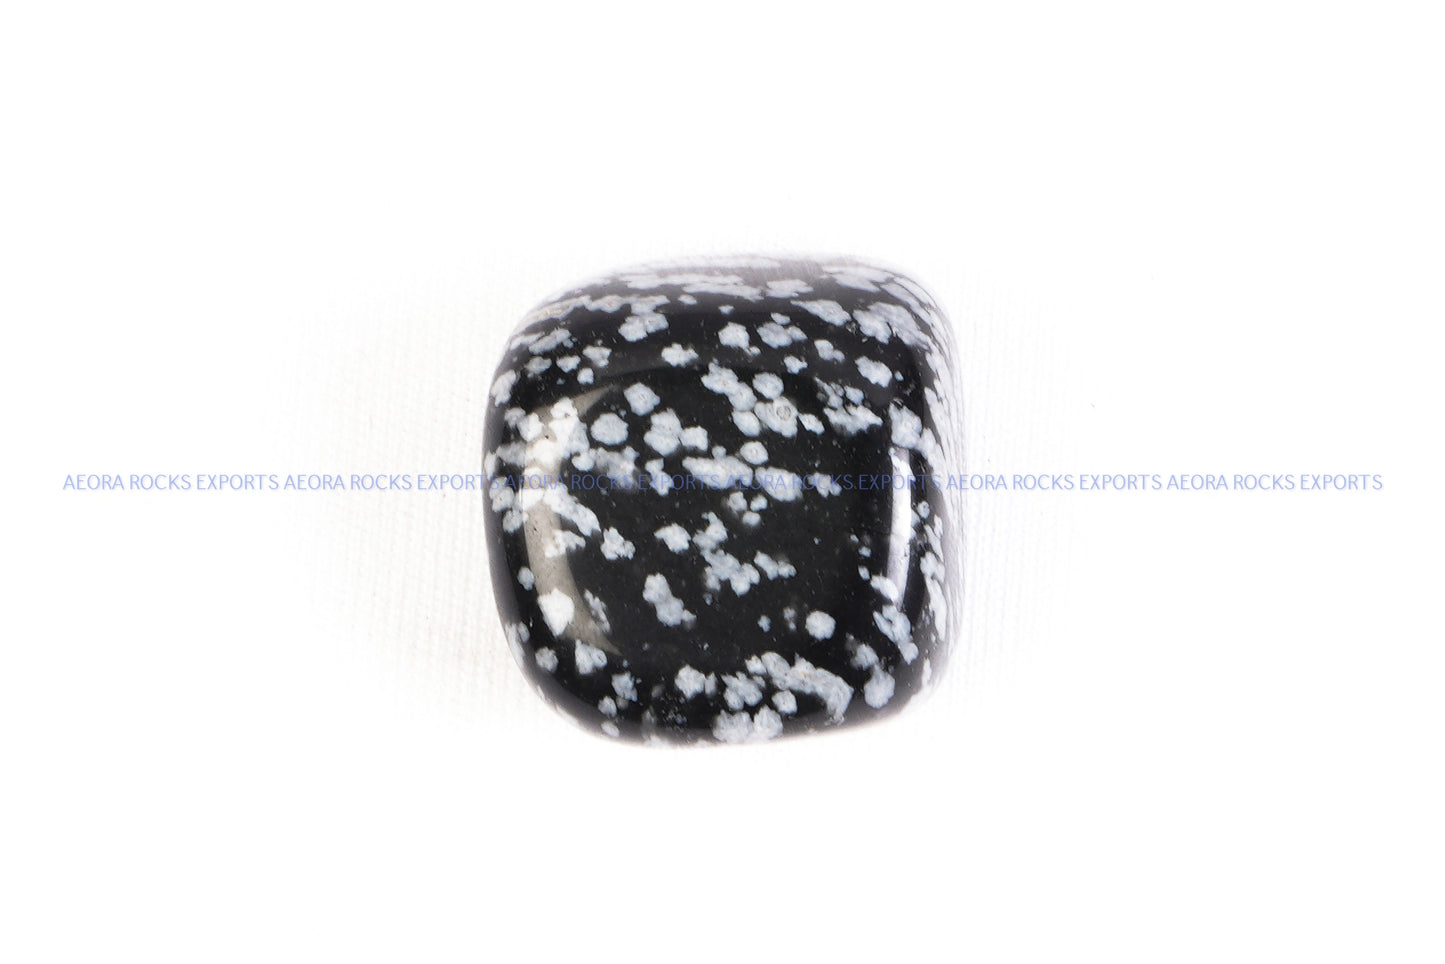 Snowflake Obsidian Tumbled stone